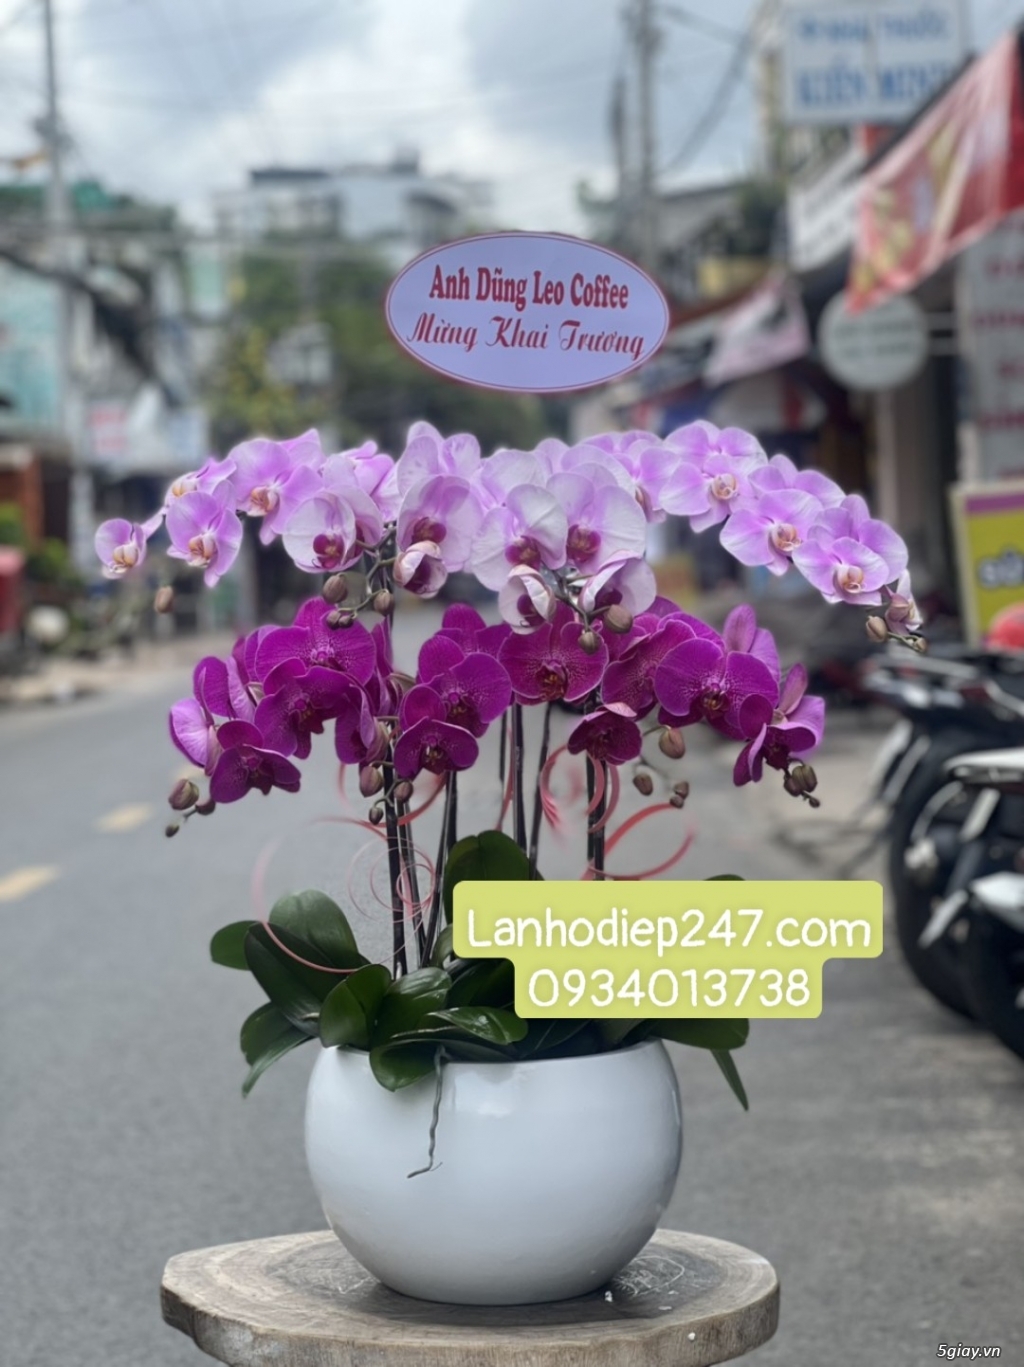 Lan Hồ Điệp VIP tại quận 7? Đặt hoa tại Hoa Lan 247 Sài Gòn Freeship - 10